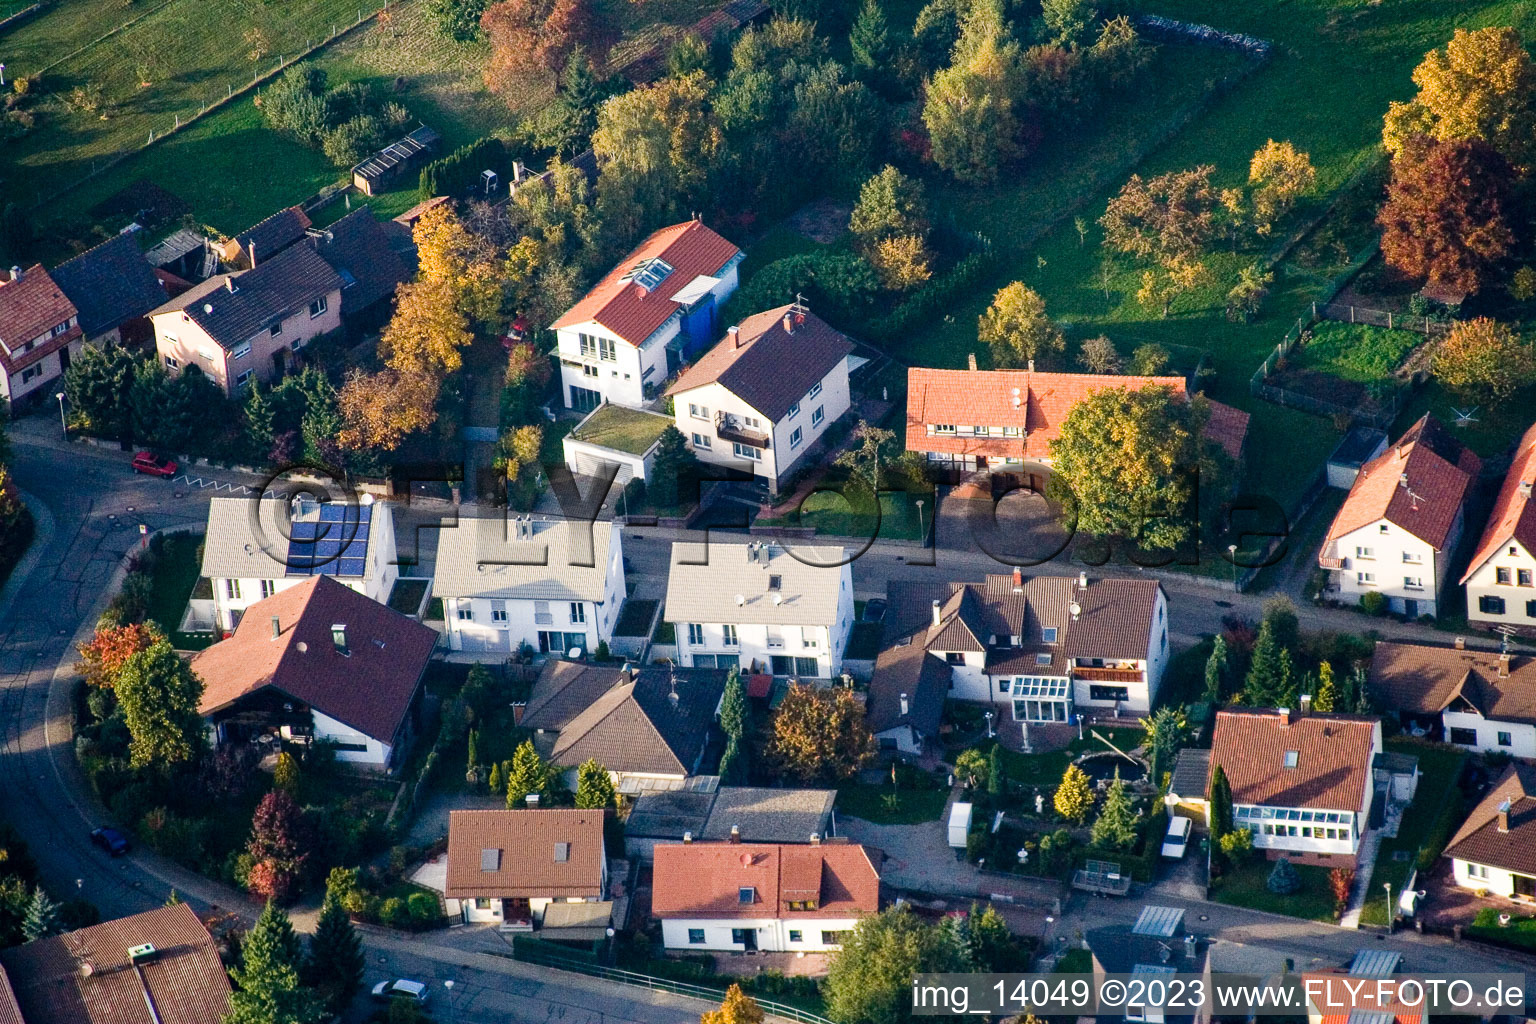 Ortsteil Schöllbronn in Ettlingen im Bundesland Baden-Württemberg, Deutschland von der Drohne aus gesehen